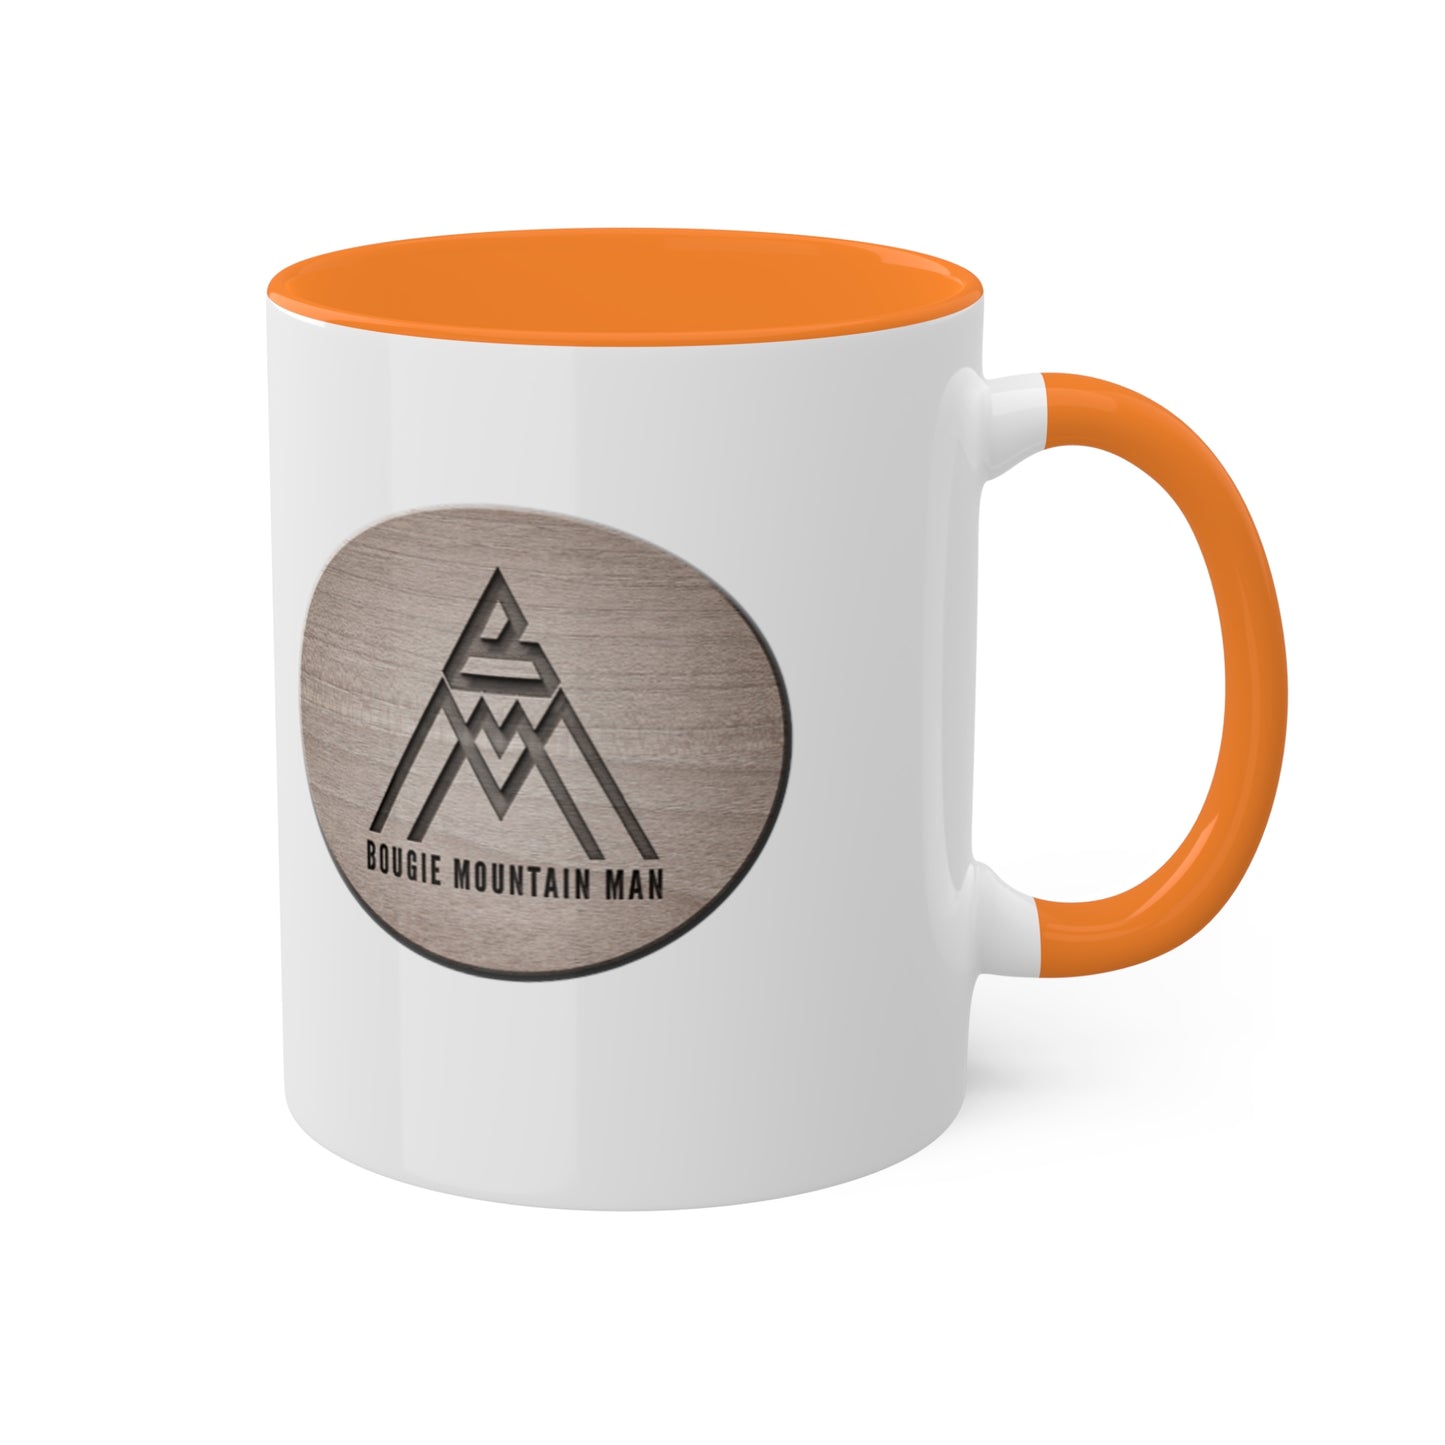 Bougie Mountain Man Mug (logo)